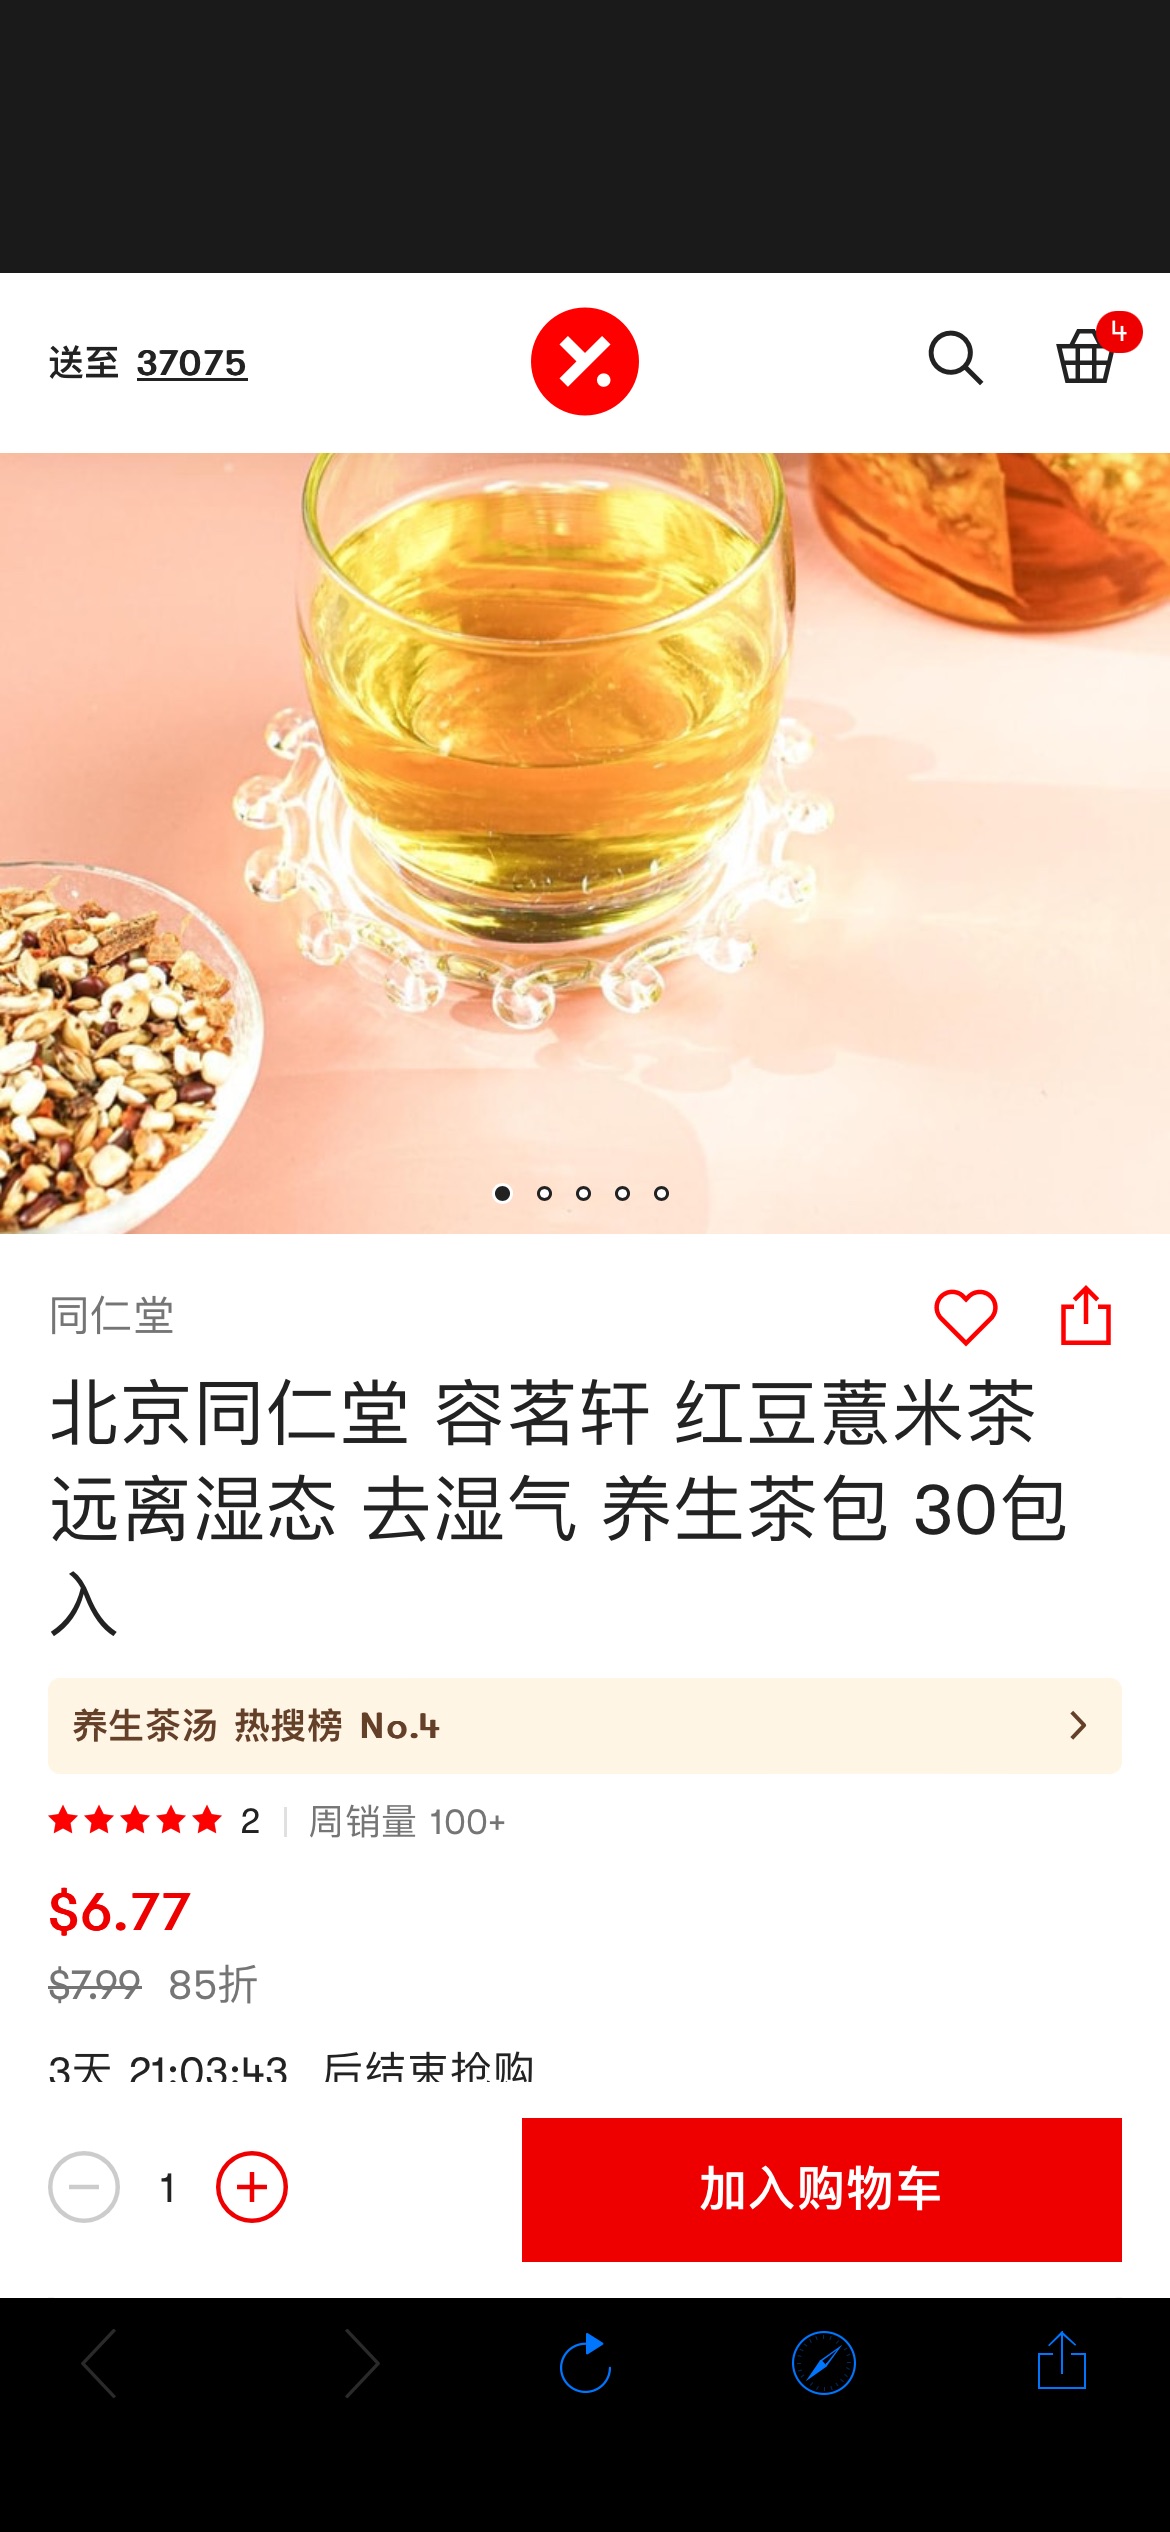 北京同仁堂 容茗轩 红豆薏米茶 远离湿态 去湿气 养生茶包 30包入 - 亚米